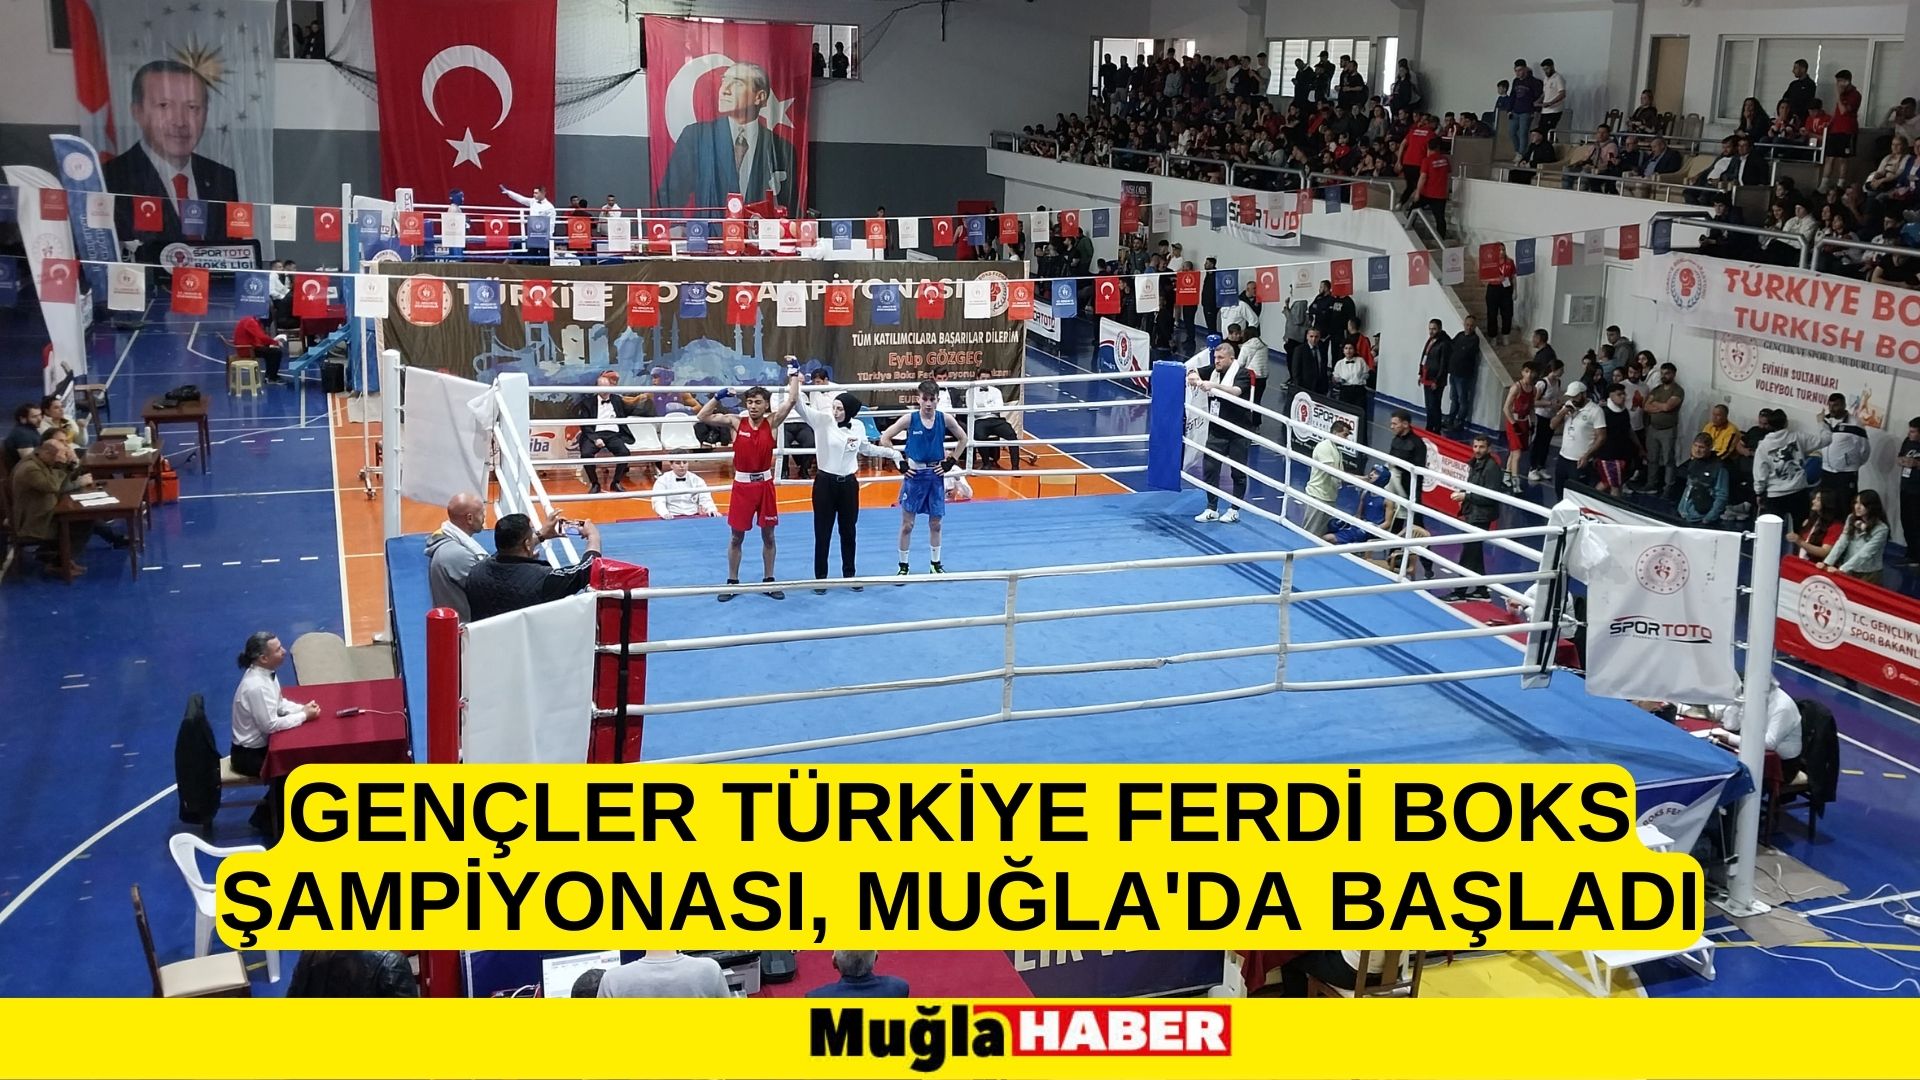 Gençler Türkiye Ferdi Boks Şampiyonası, Muğla'da başladı